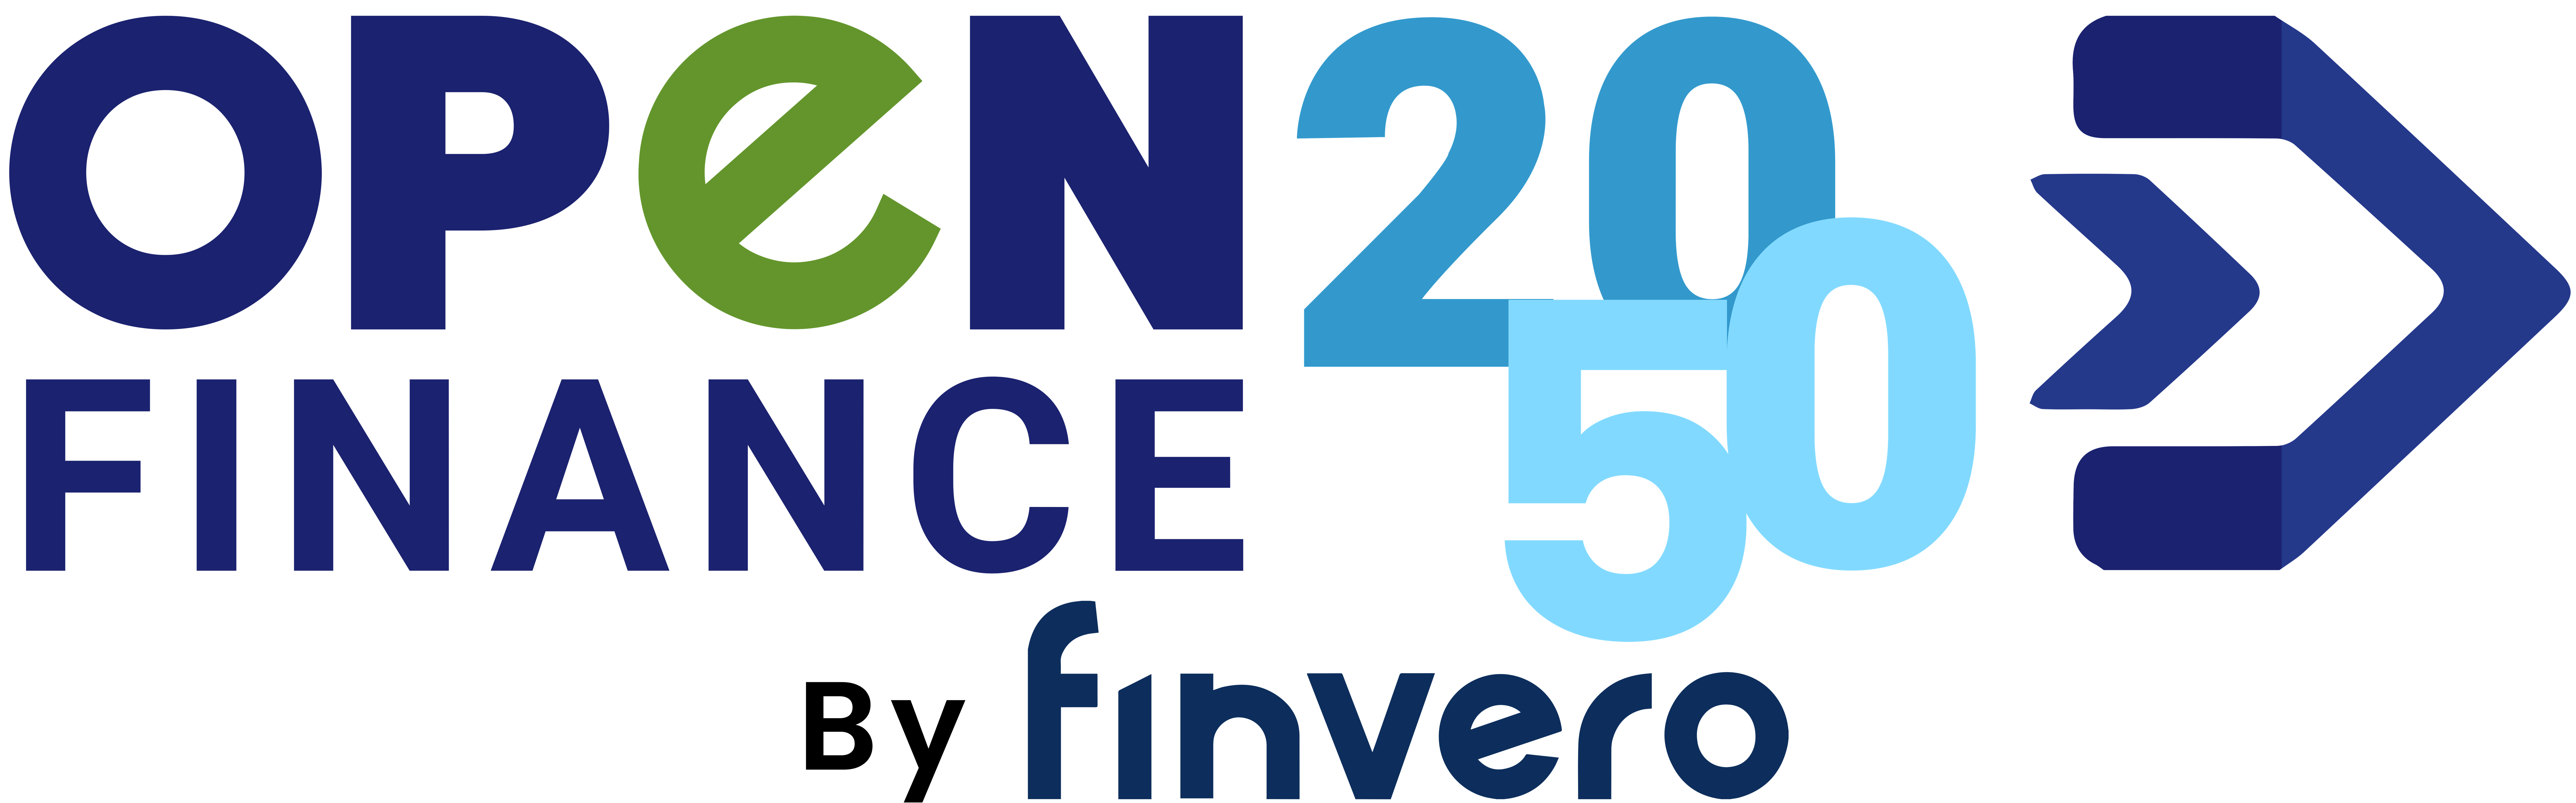 Open Finance 2050 celebra con gran éxito su sexta edición para impulsar el crecimiento del ecosistema financiero en México